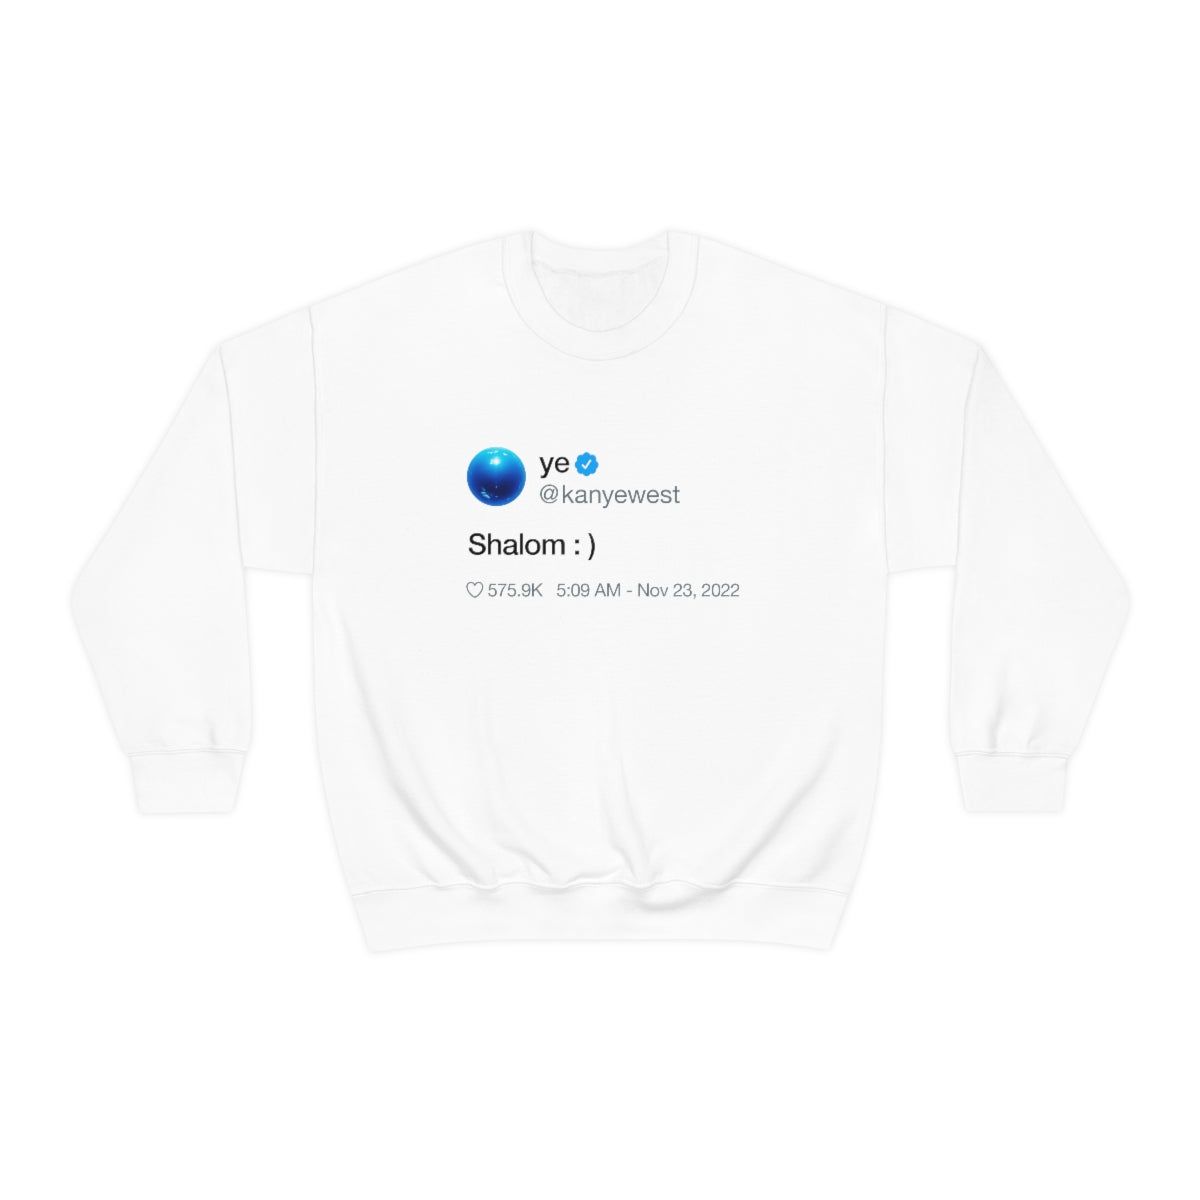 Shalom Kanye West Tweet Inspired Crewneck Sweatshirt